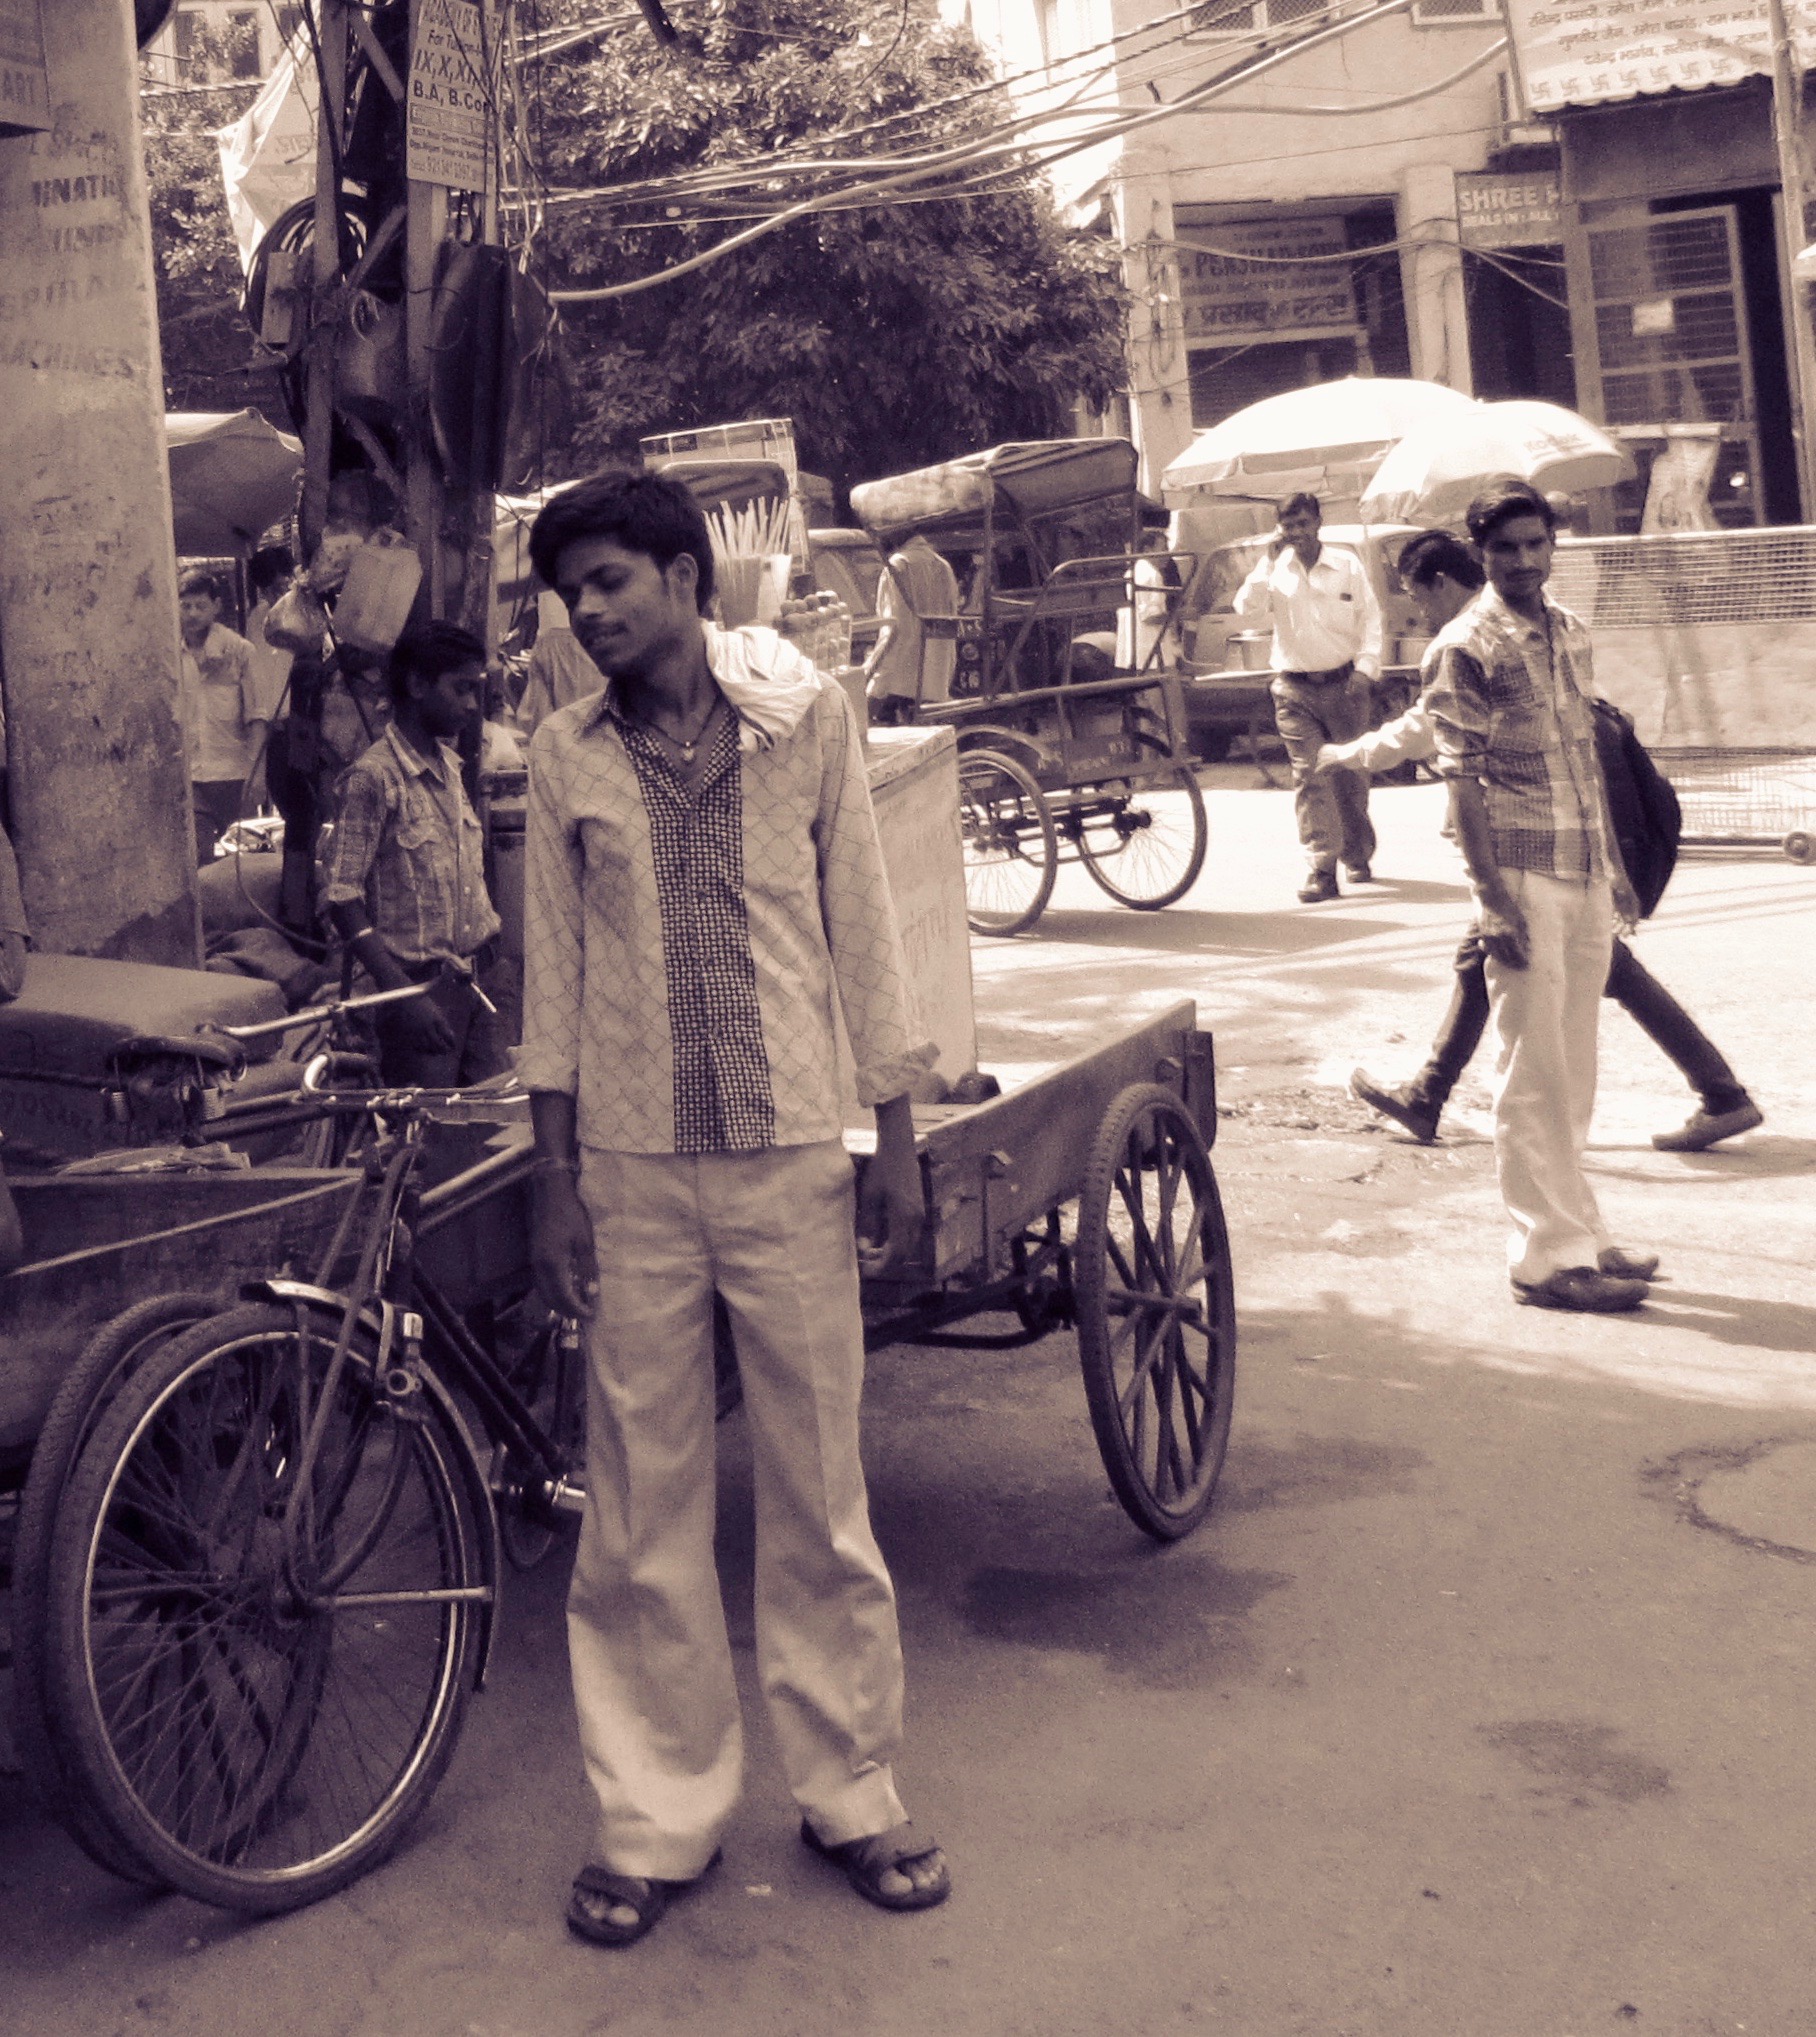 The rickshaw wallah